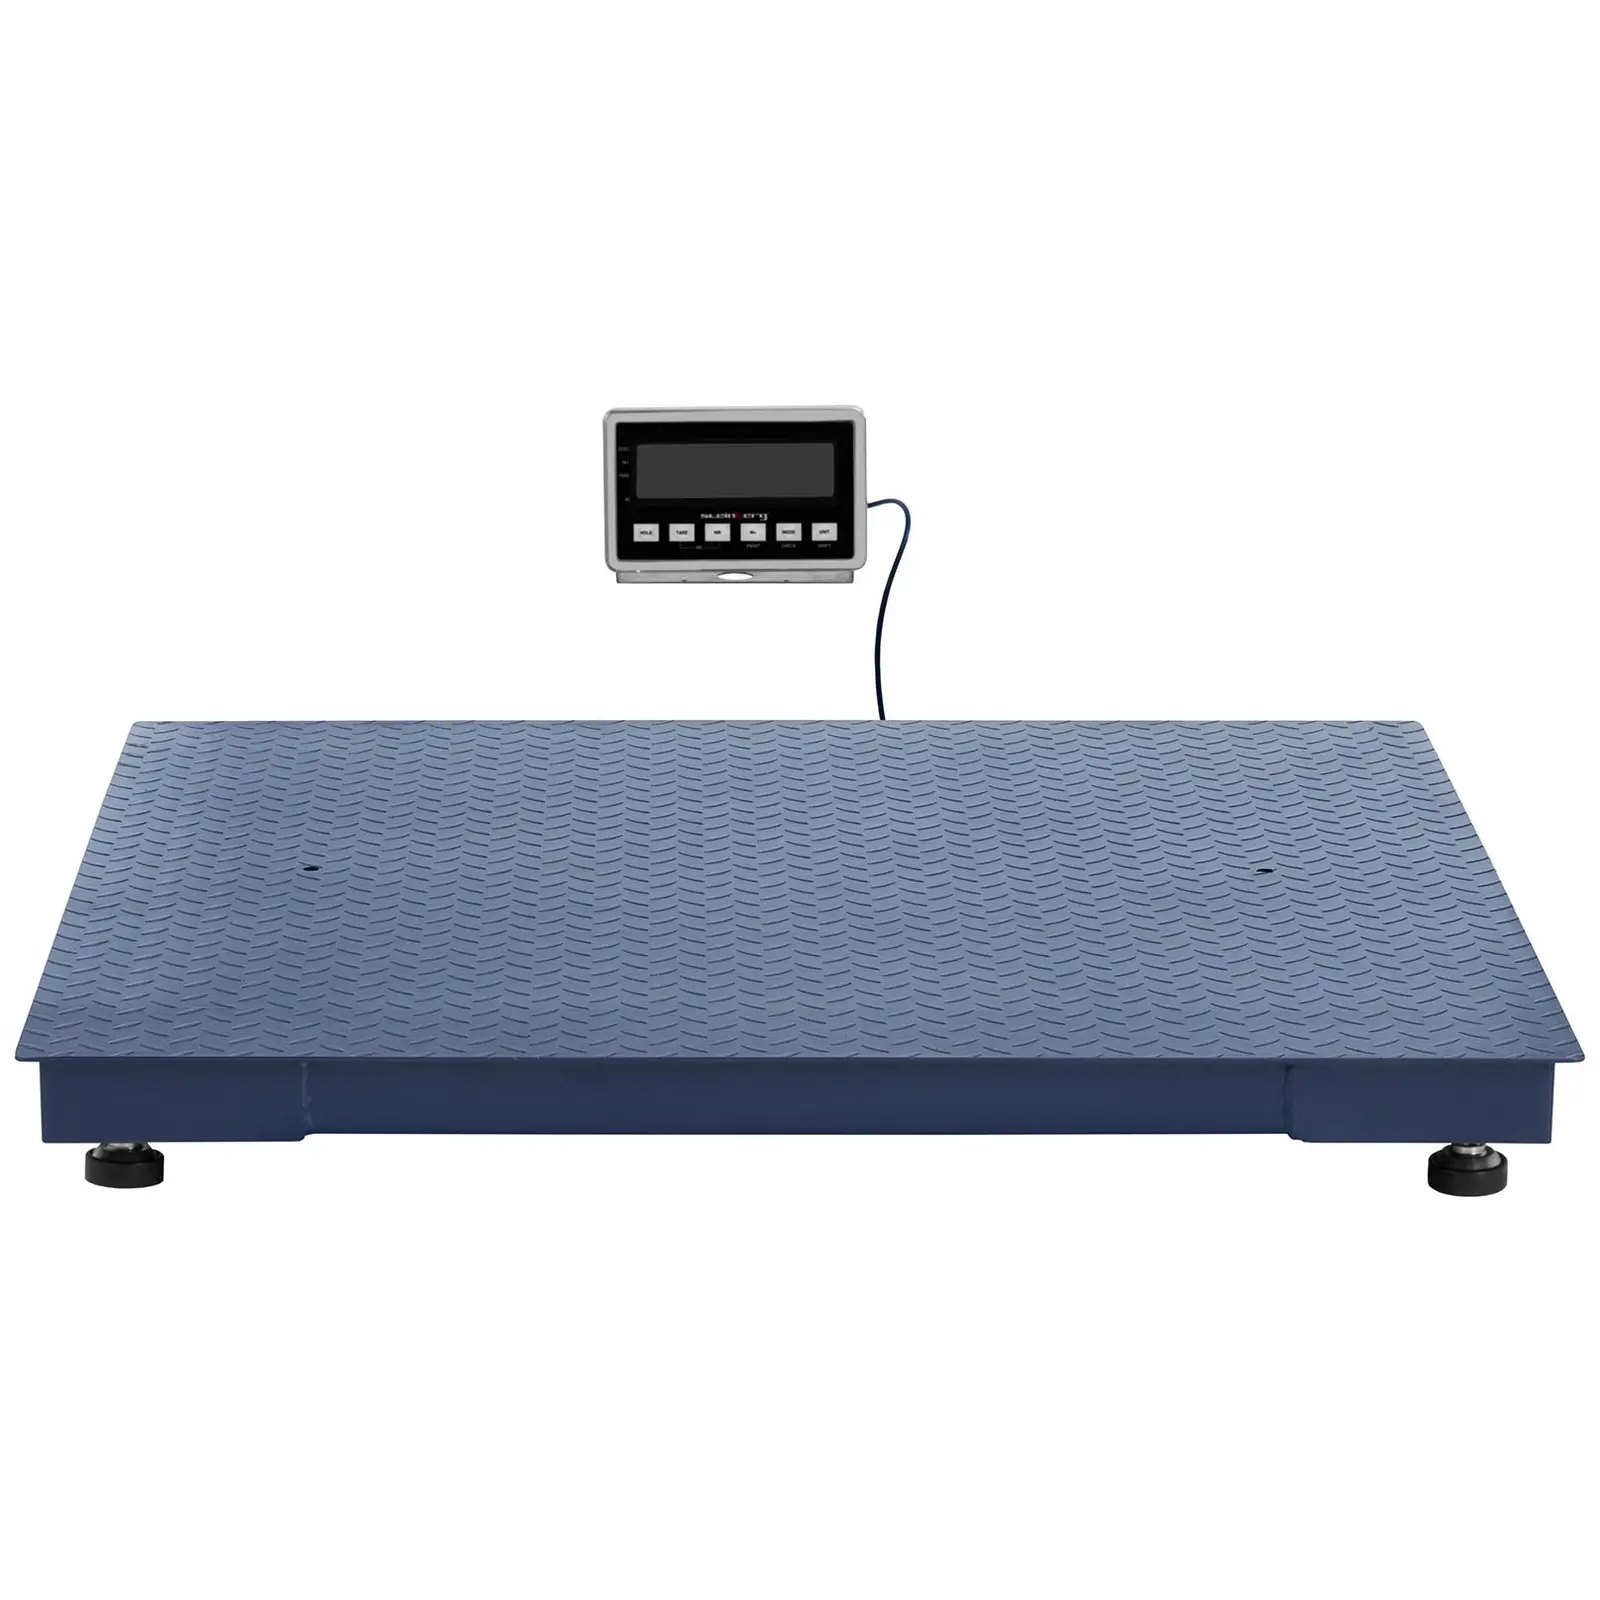 Balance au sol - 3000 kg / 1 kg - 1200 x 1200 mm - LCD